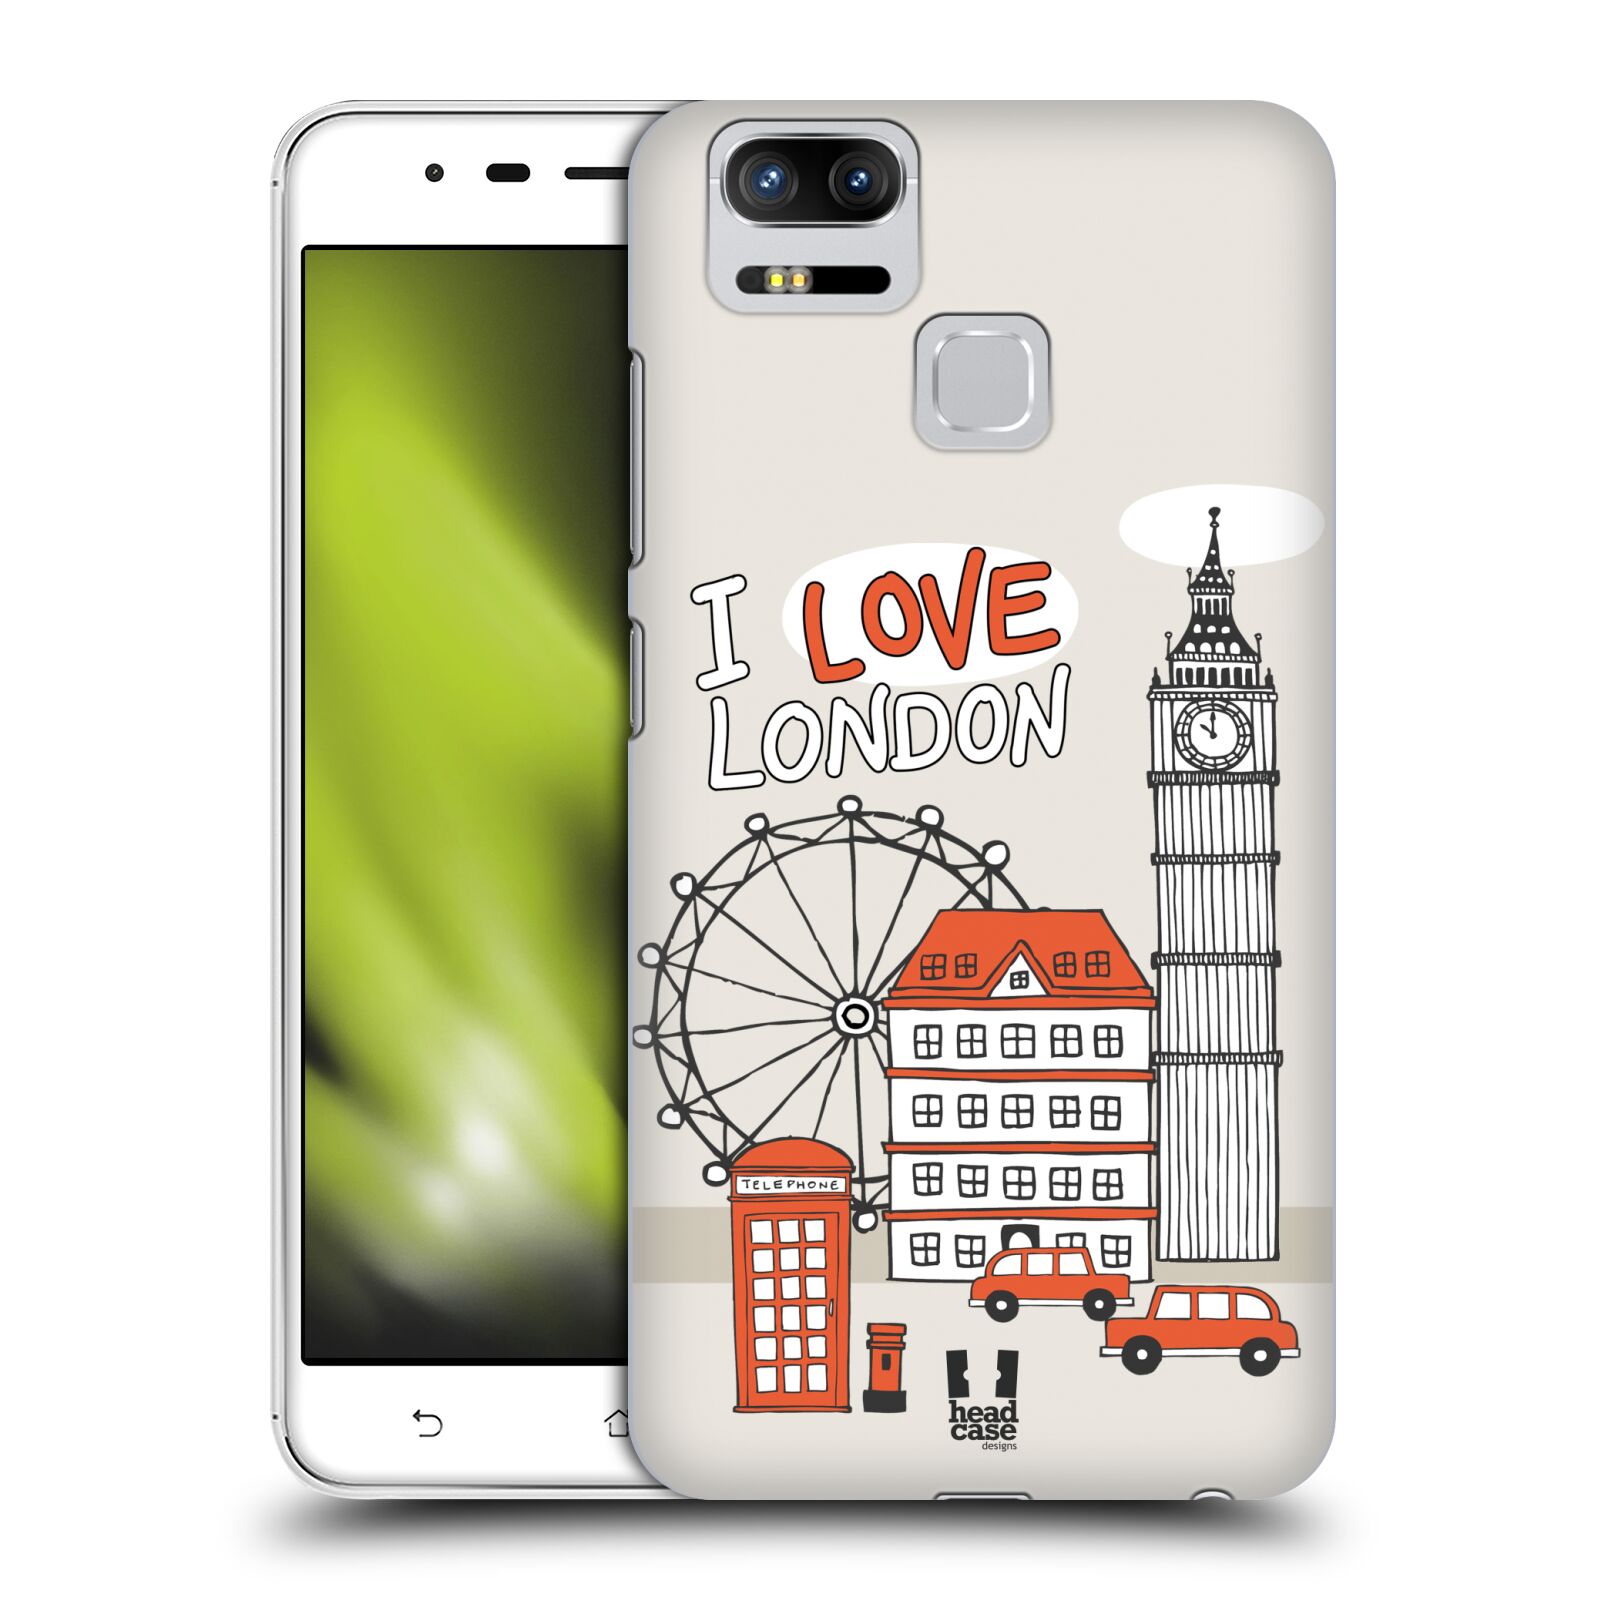 HEAD CASE plastový obal na mobil Asus Zenfone 3 Zoom ZE553KL vzor Kreslená městečka ČERVENÁ, Anglie, Londýn, I LOVE LONDON